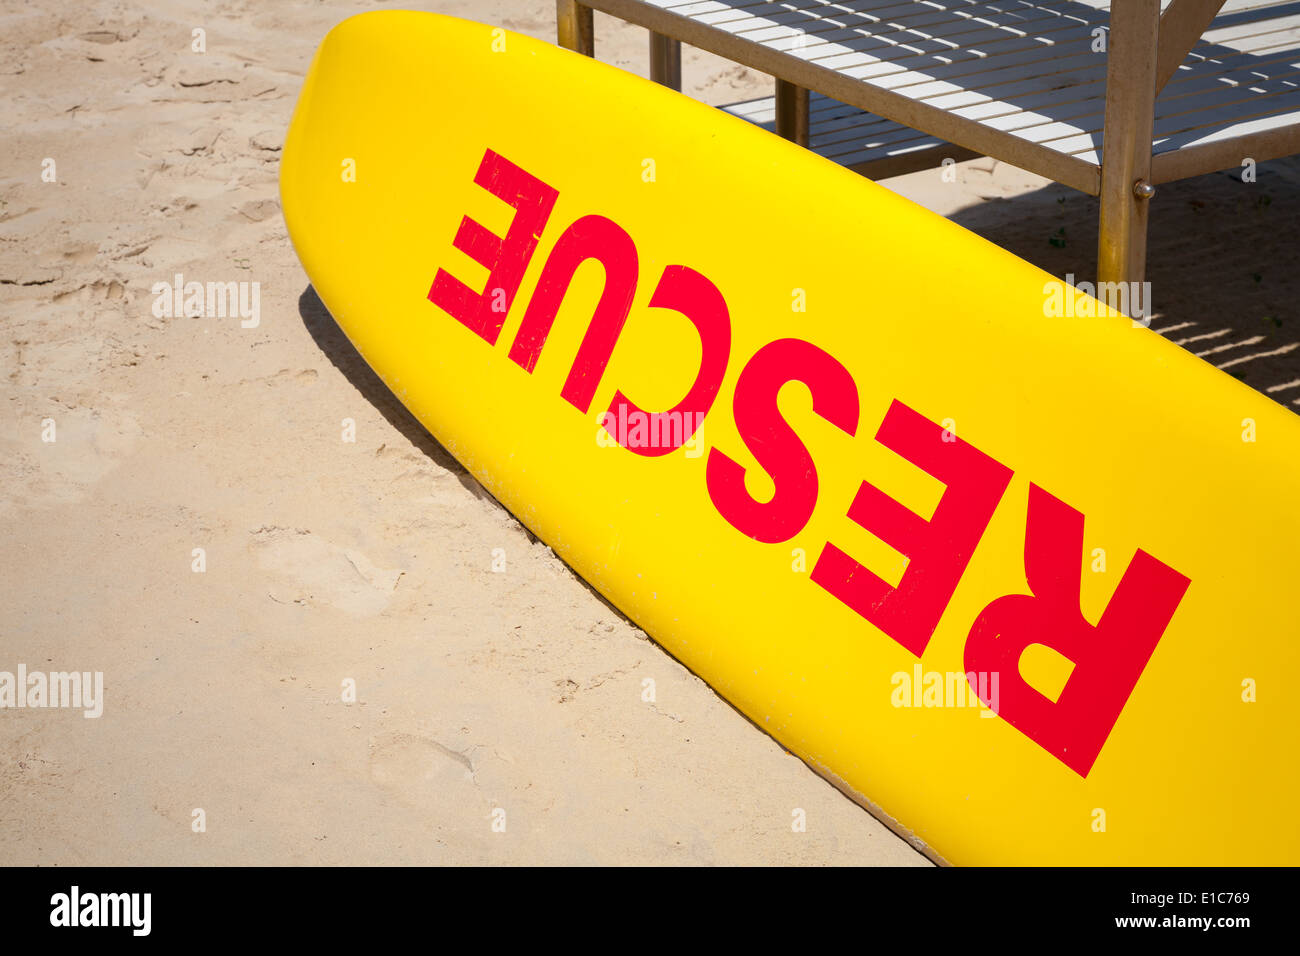 Petit bateau de sauvetage jaune fixe on sandy beach Banque D'Images